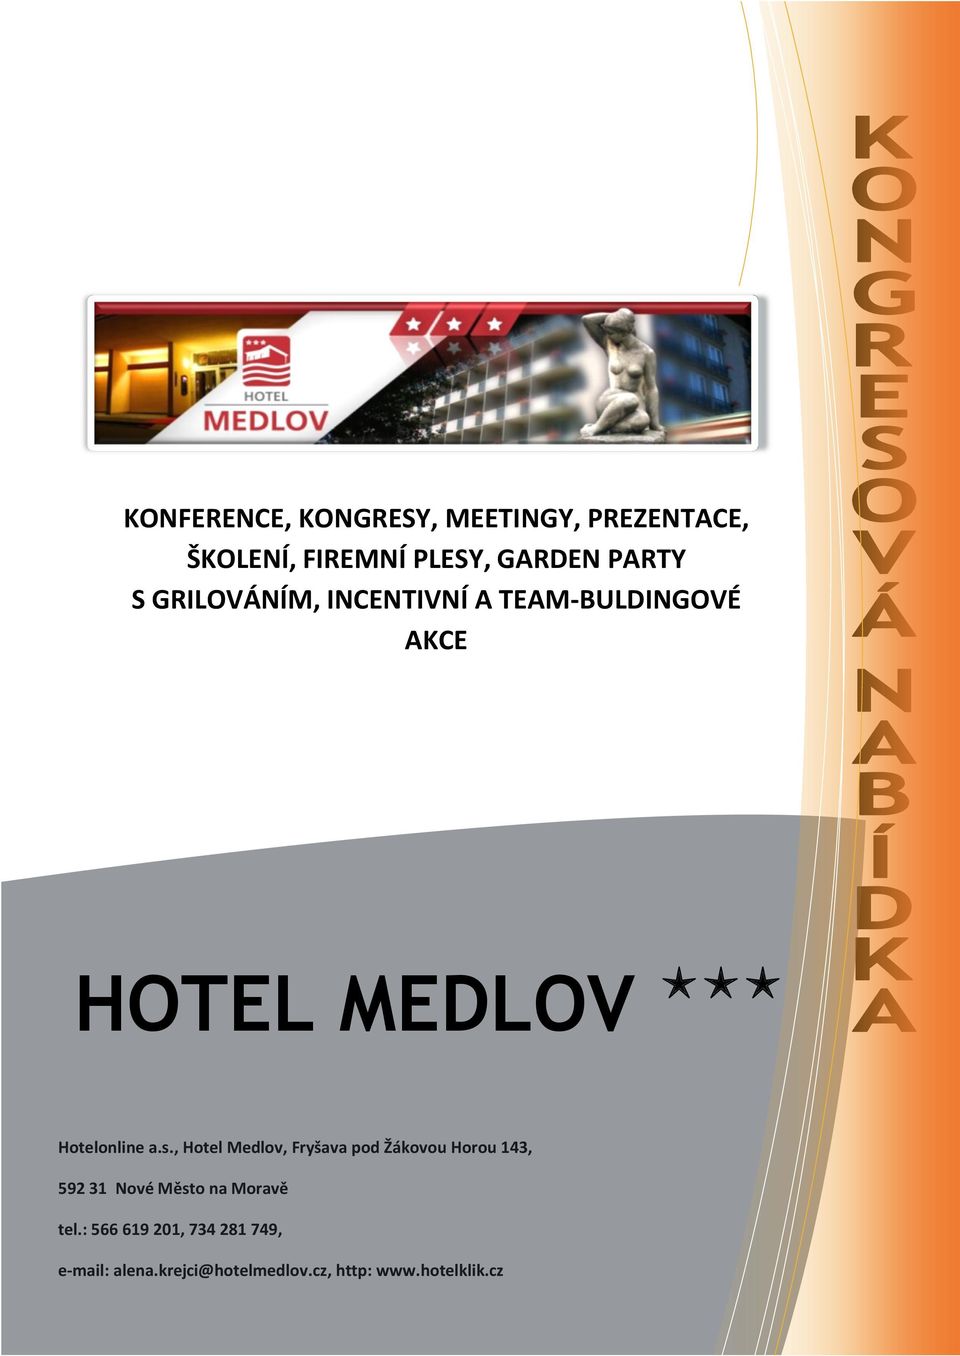 , Hotel Medlov, Fryšava pod Žákovou Horou 143, 592 31 Nové Město na Moravě tel.